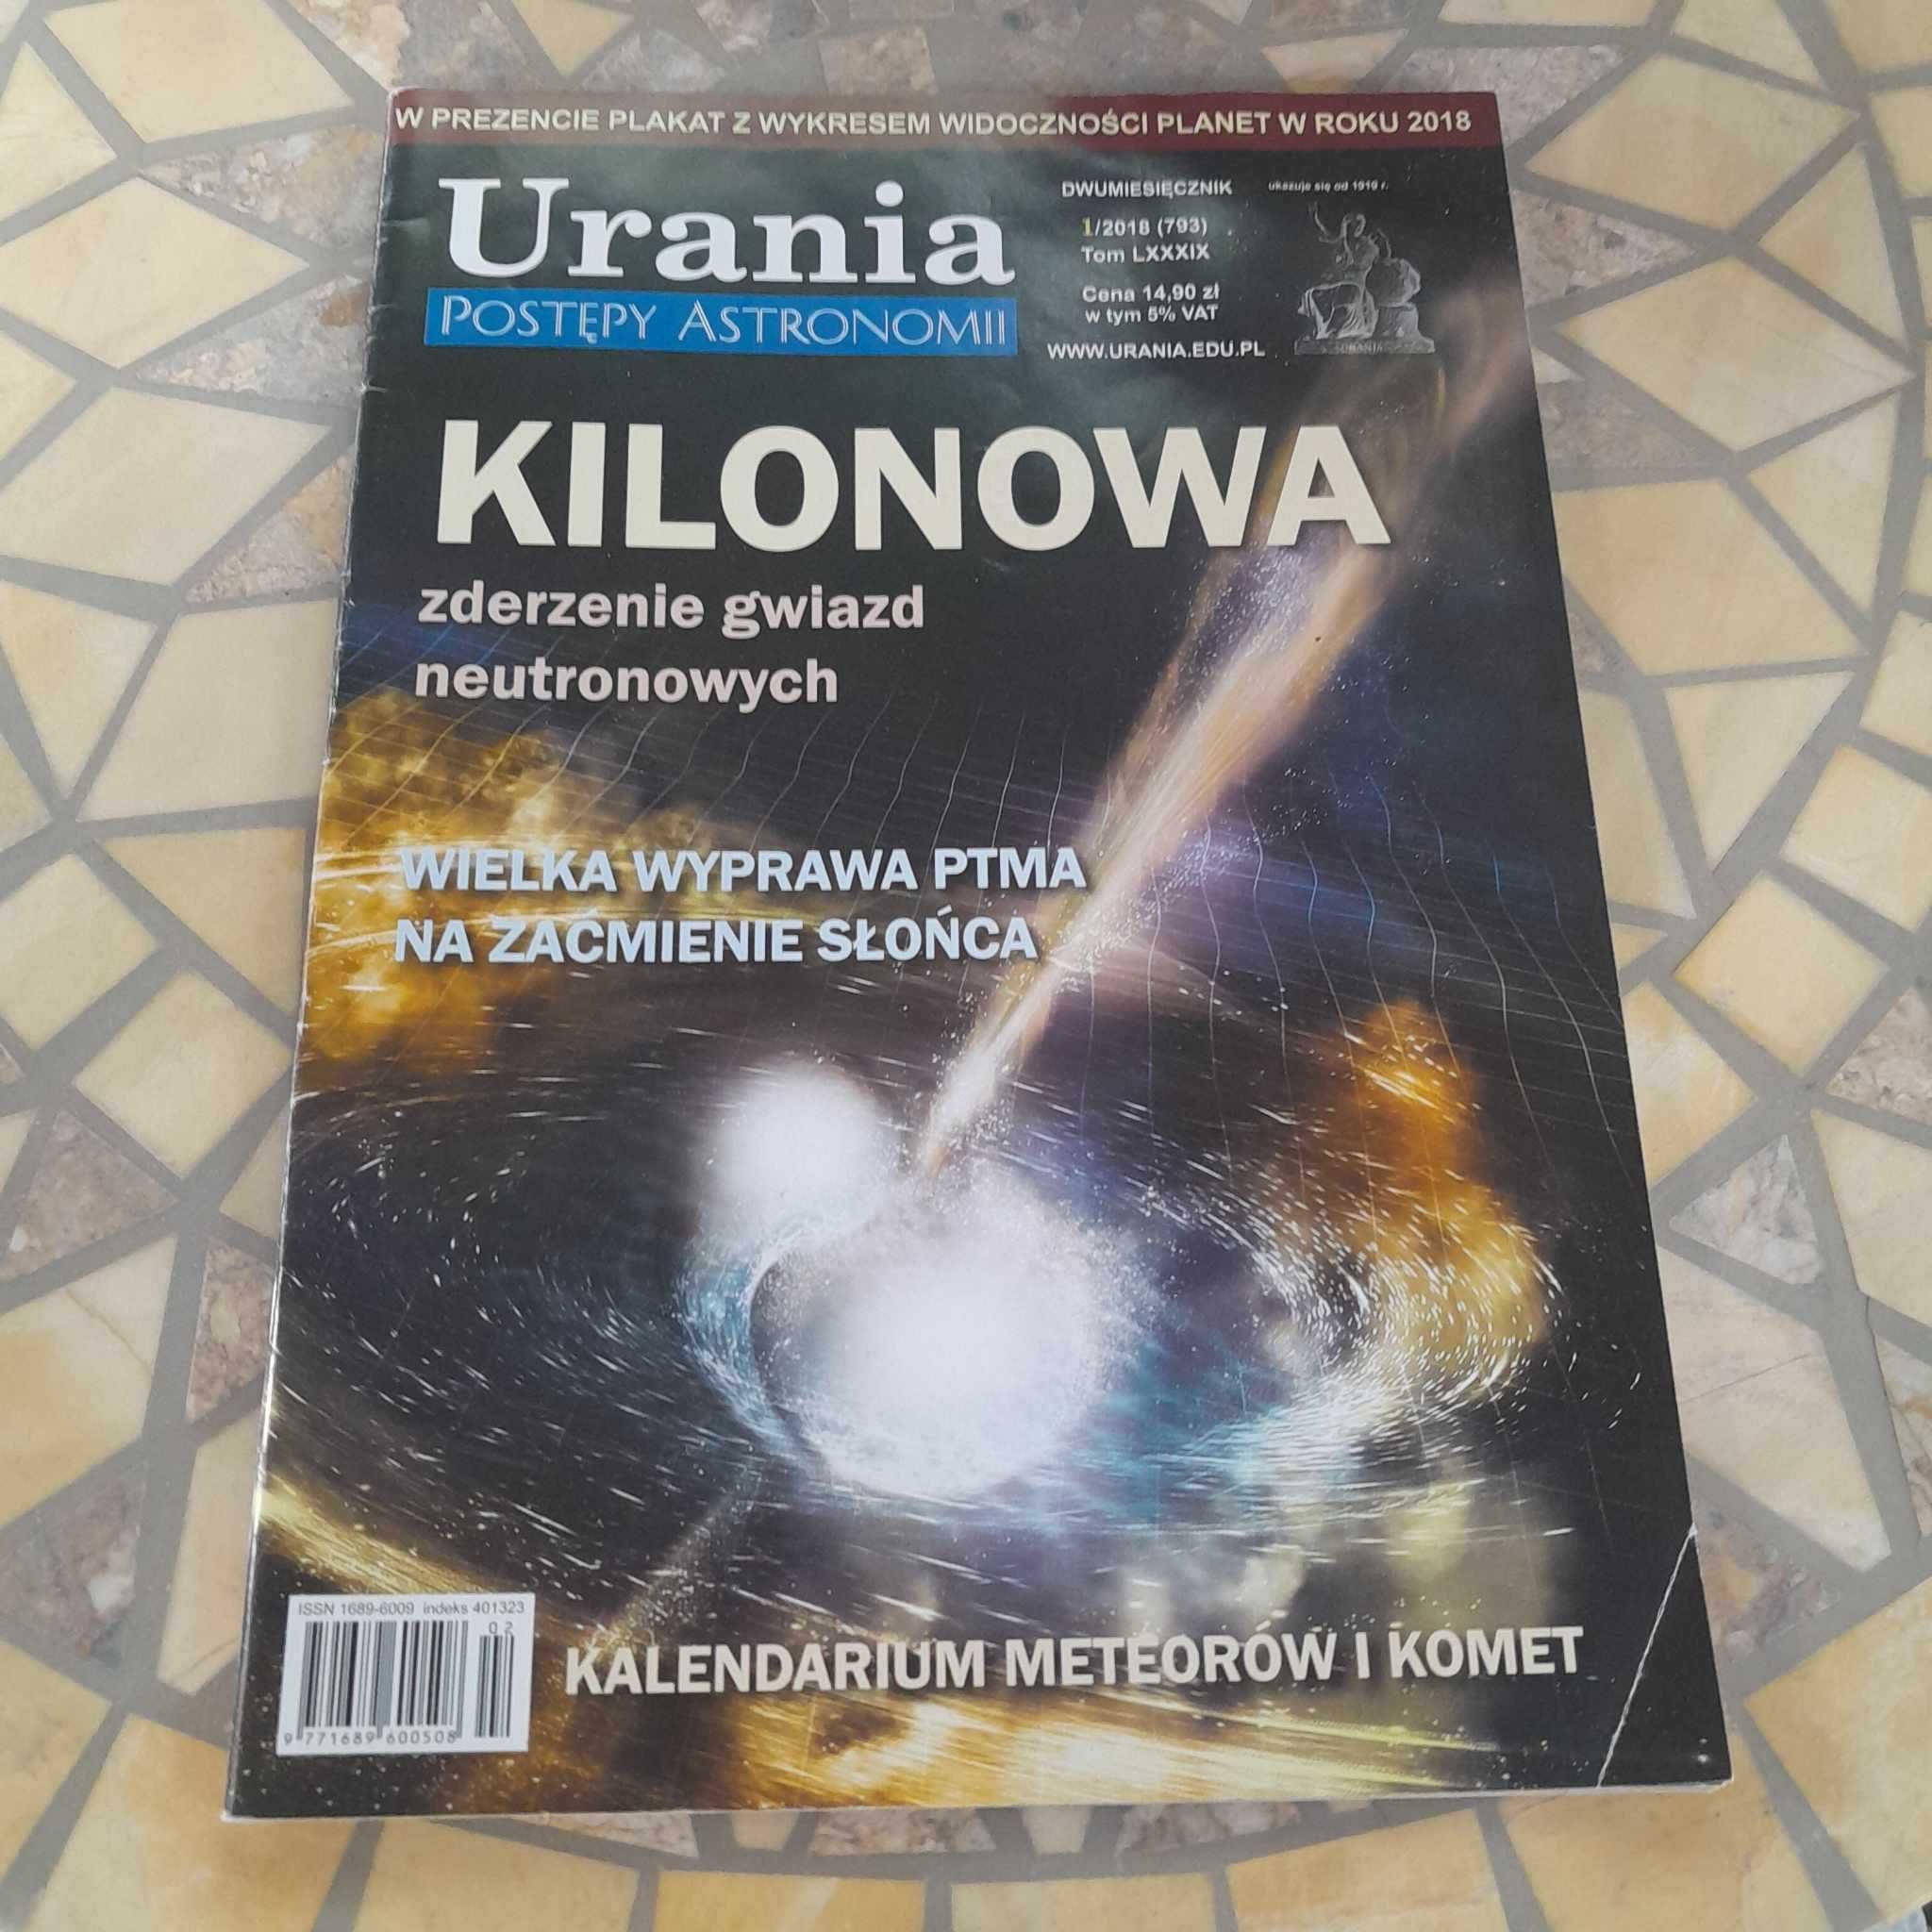 Gazeta "Urania": Kilonowa zderzenie gwiazd neutronowych